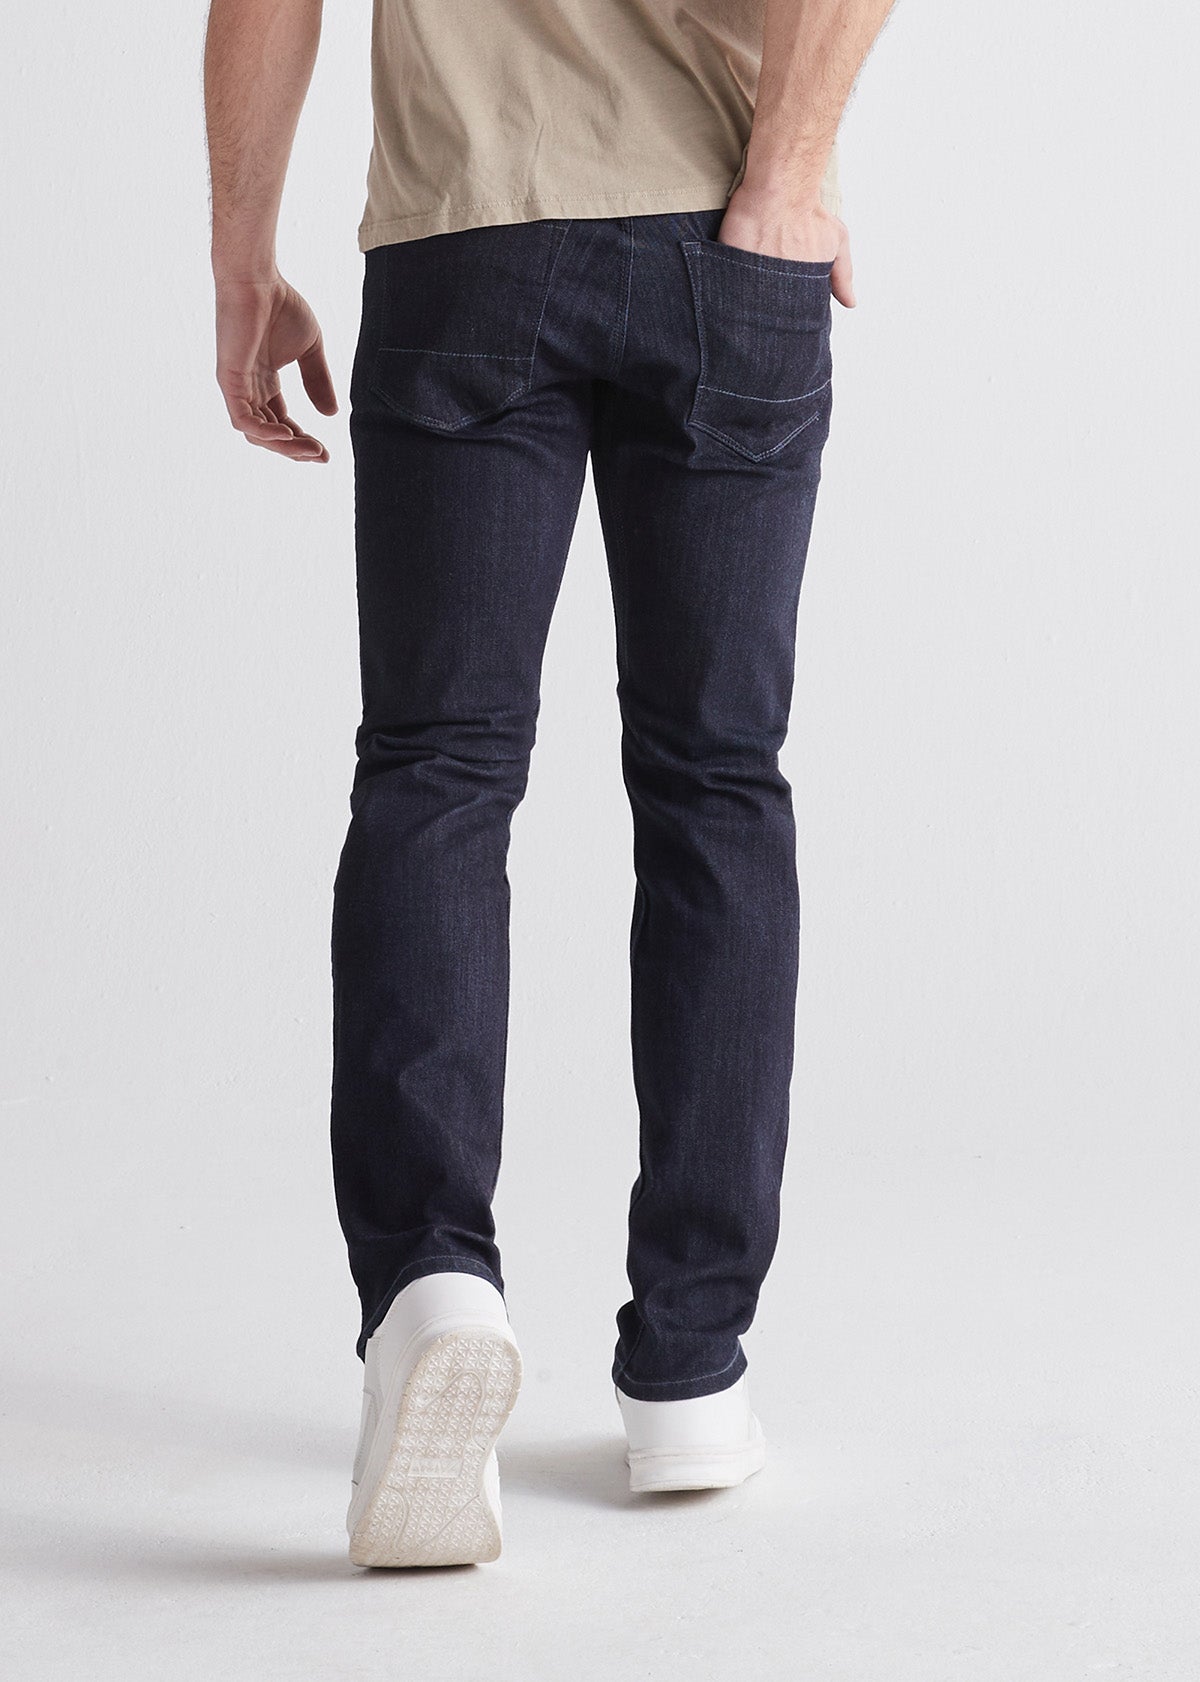 Men's Slim Fit Jeans & Pants - DUER